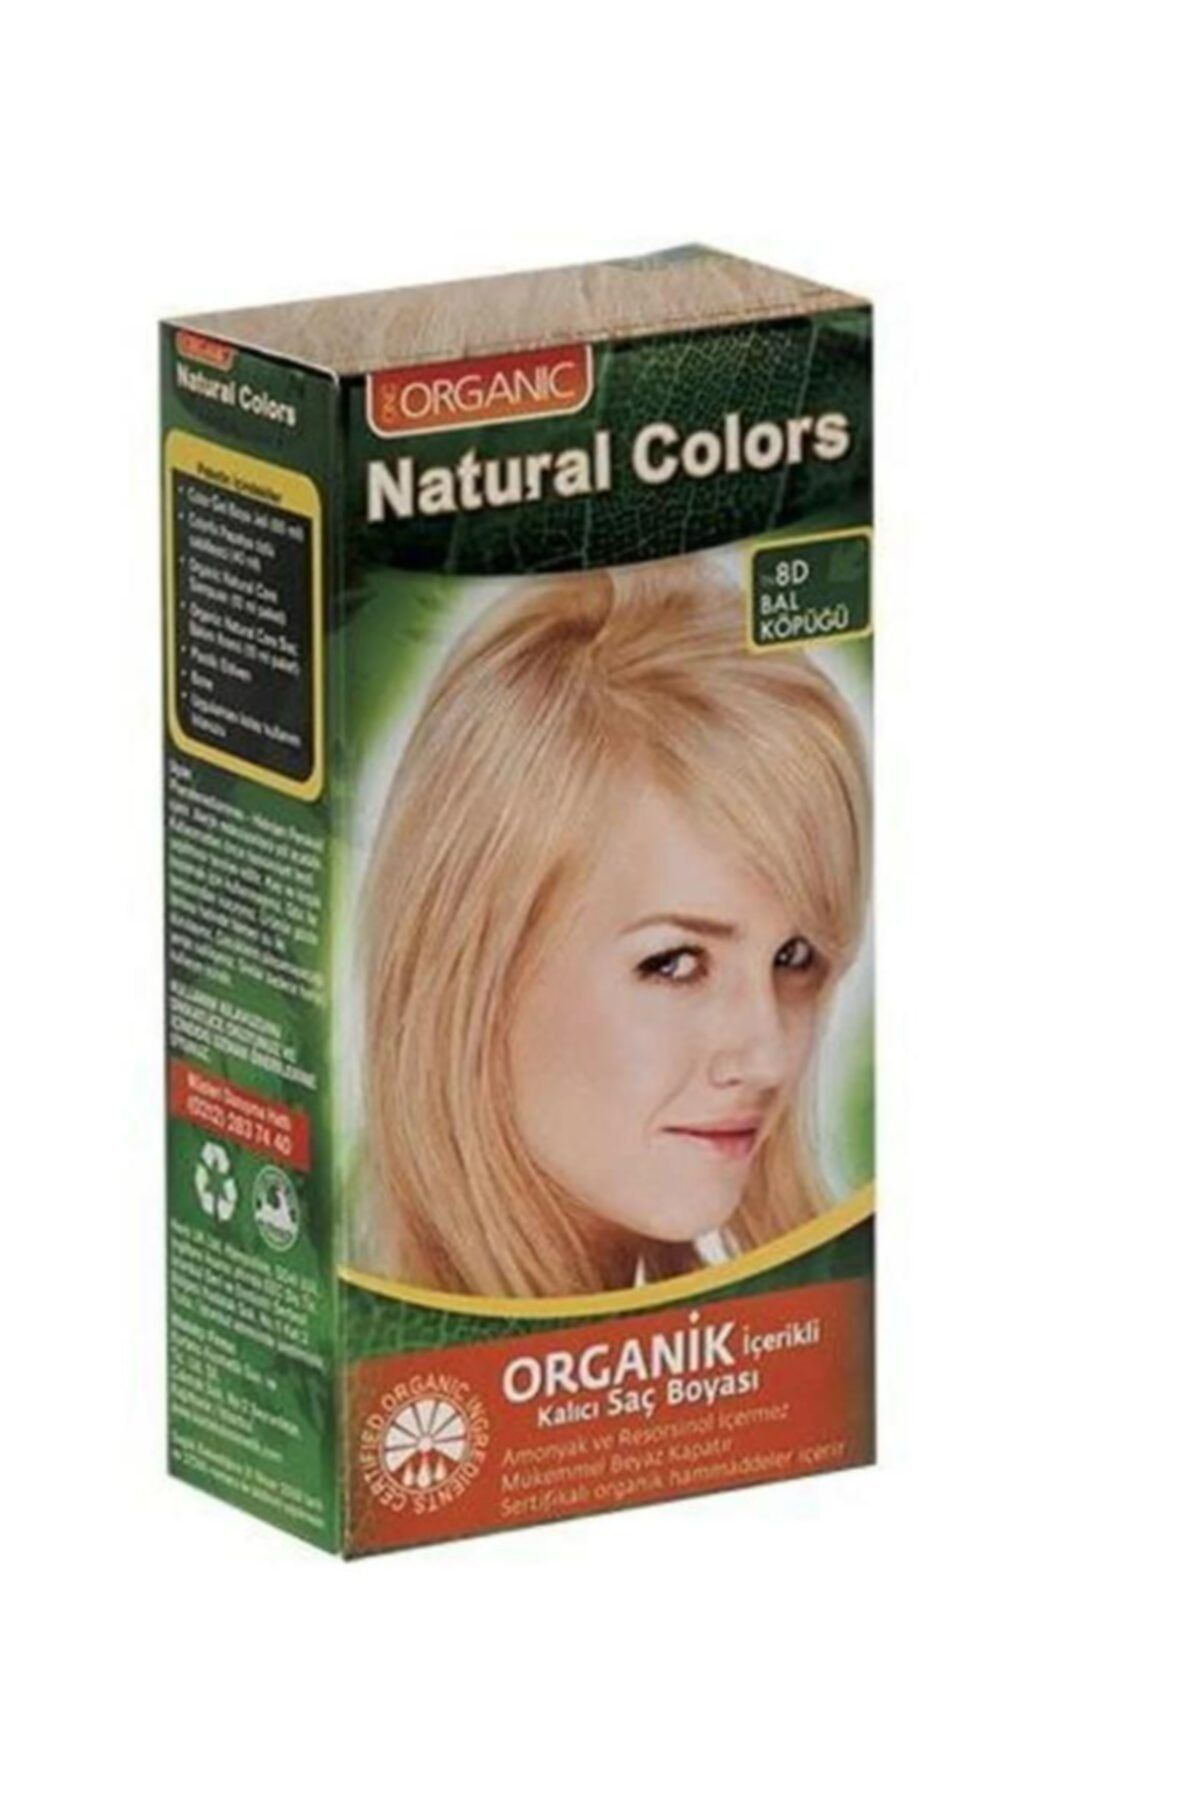 Organic Natural Colors Natural Colors Organik Saç Boyası 8d Bal Köpüğü